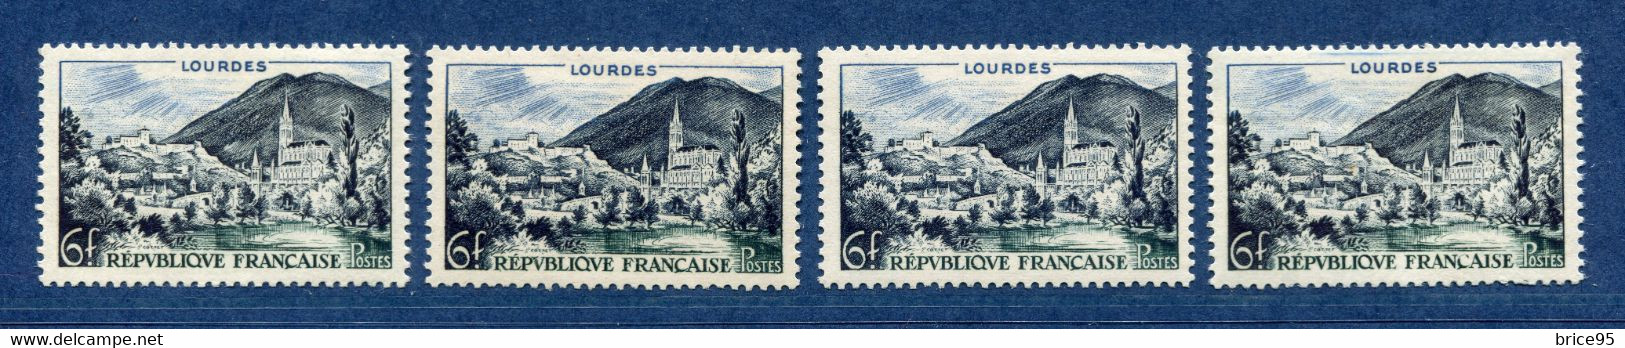 ⭐ France - Variété - YT N° 976 - Couleurs - Pétouille - Neuf Sans Charnière - 1954 ⭐ - Unused Stamps